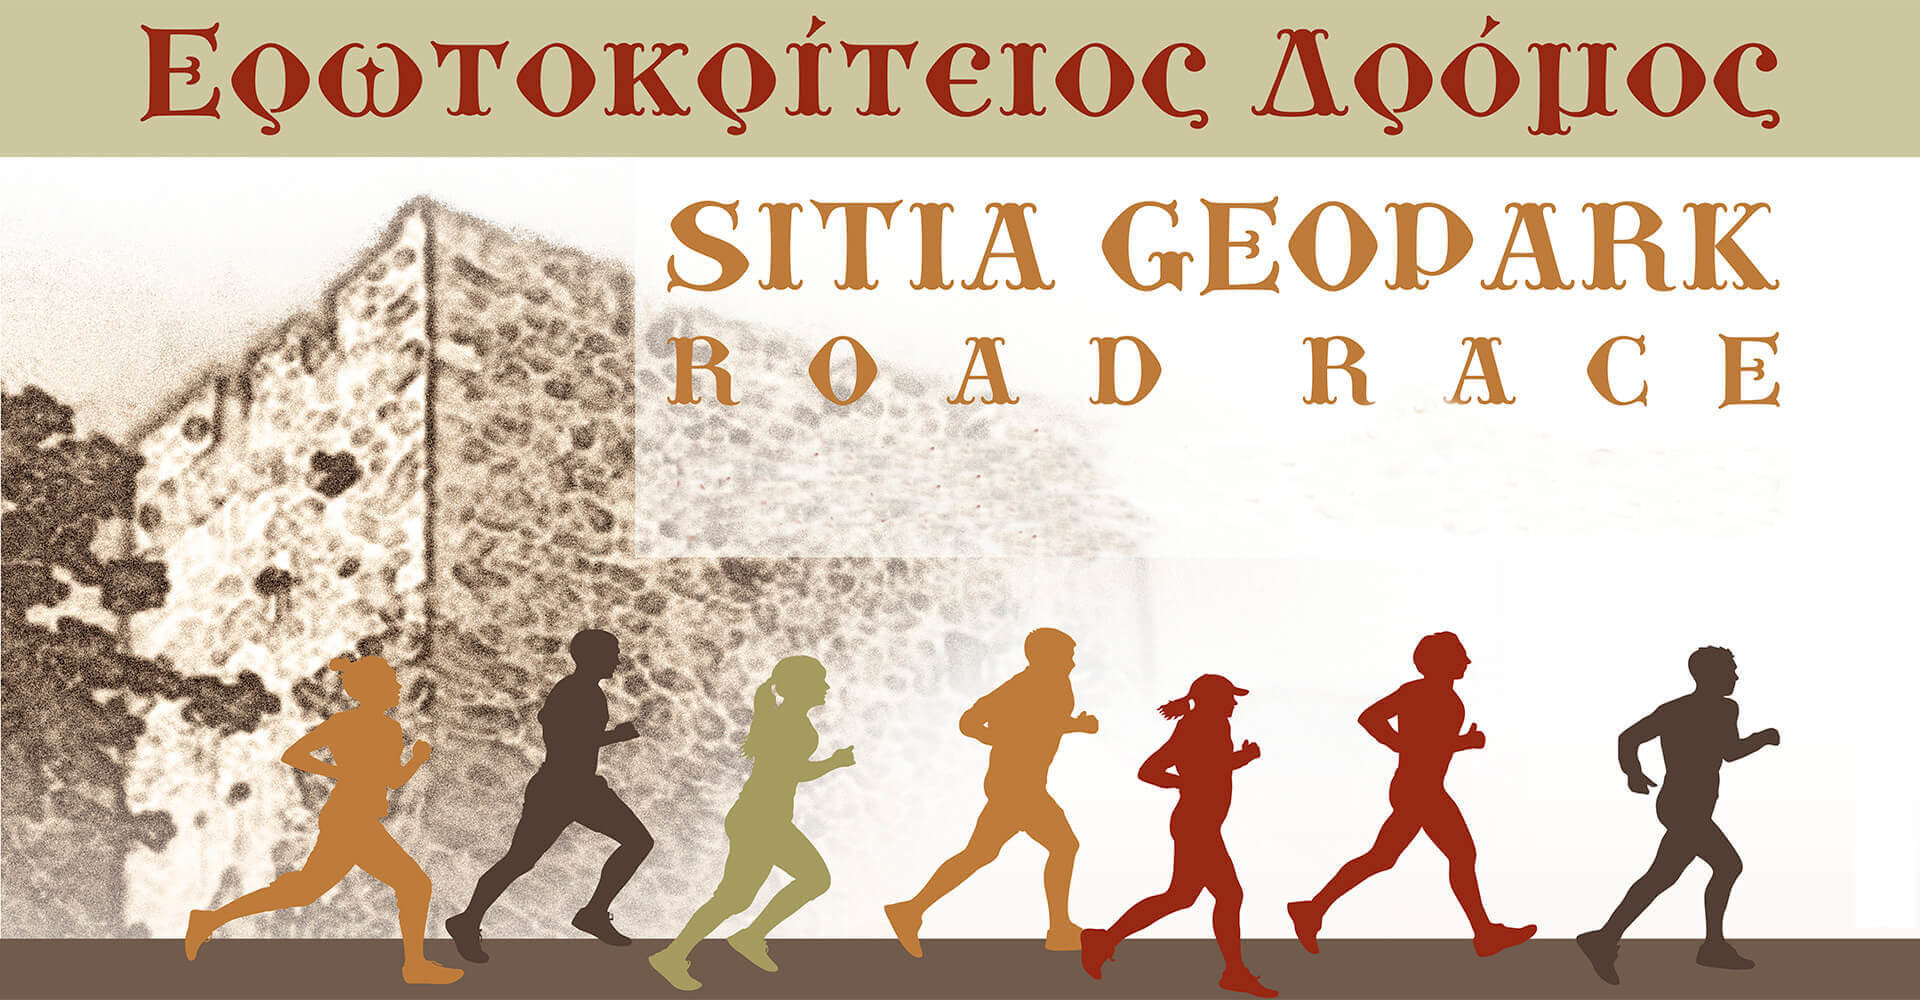 Sitia Geopark Road Race 2019 "Ερωτοκρίτειος Δρόμος" - 5χλμ